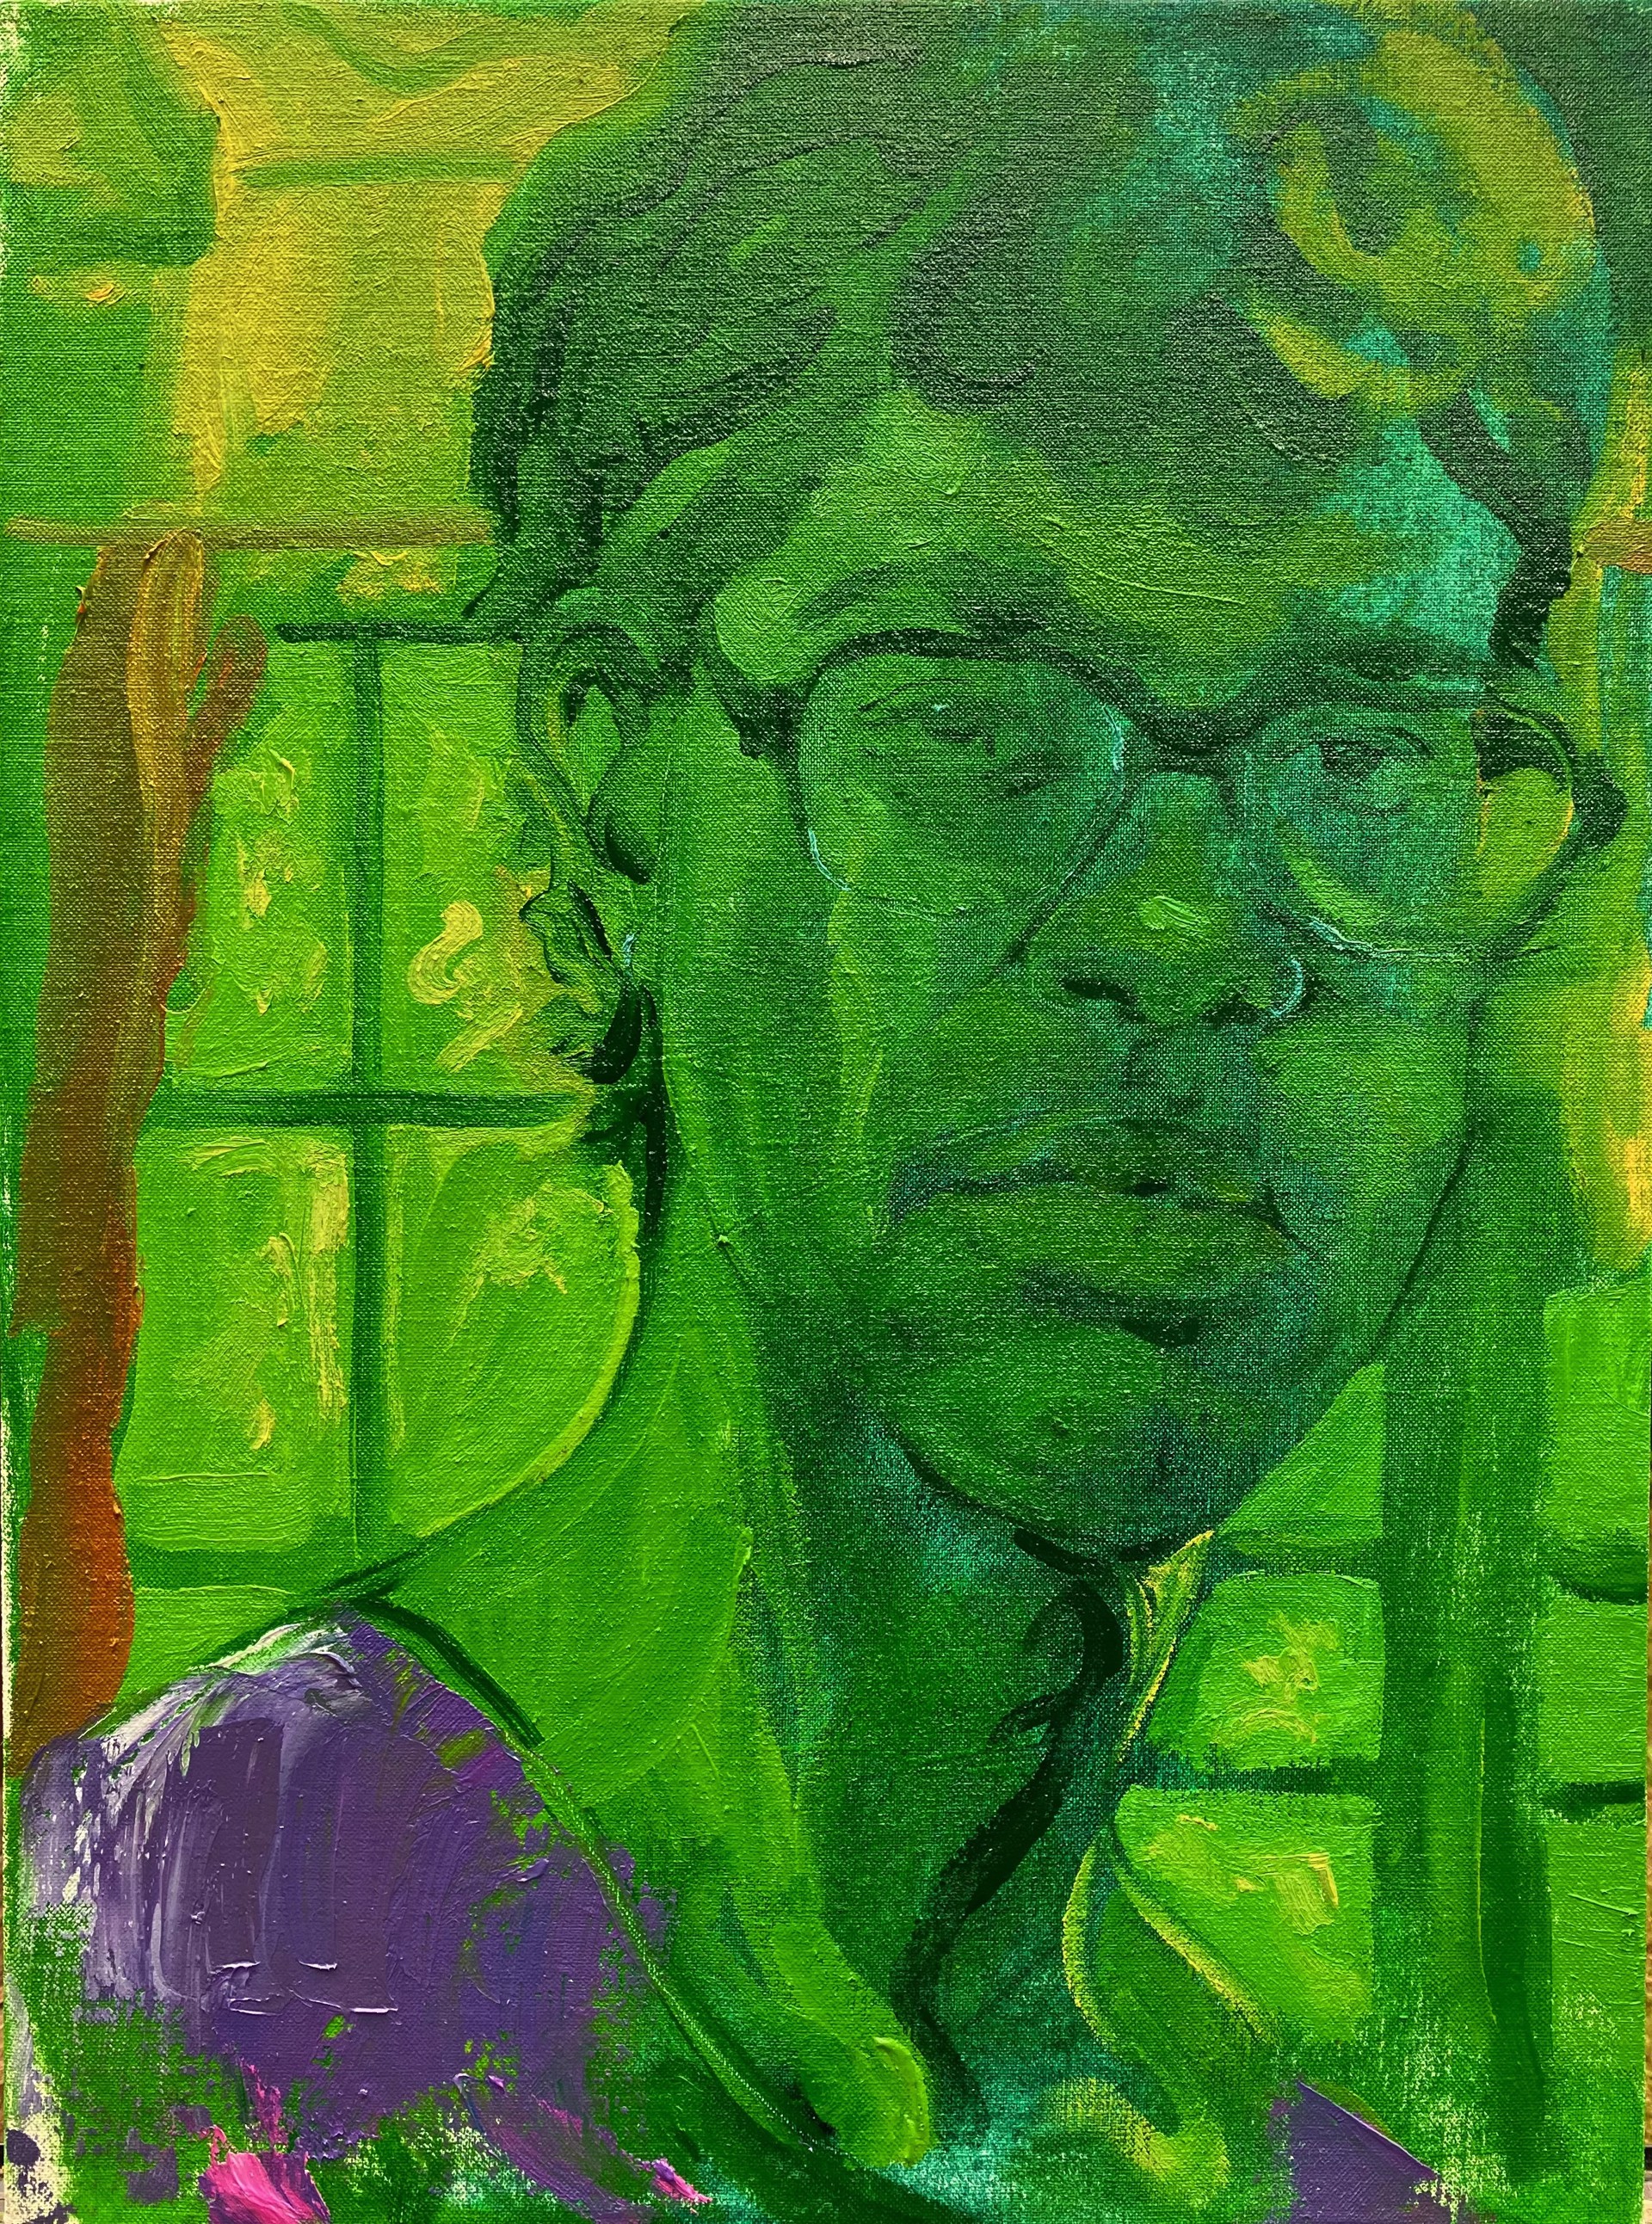 Myself, in Green by Holden Willard